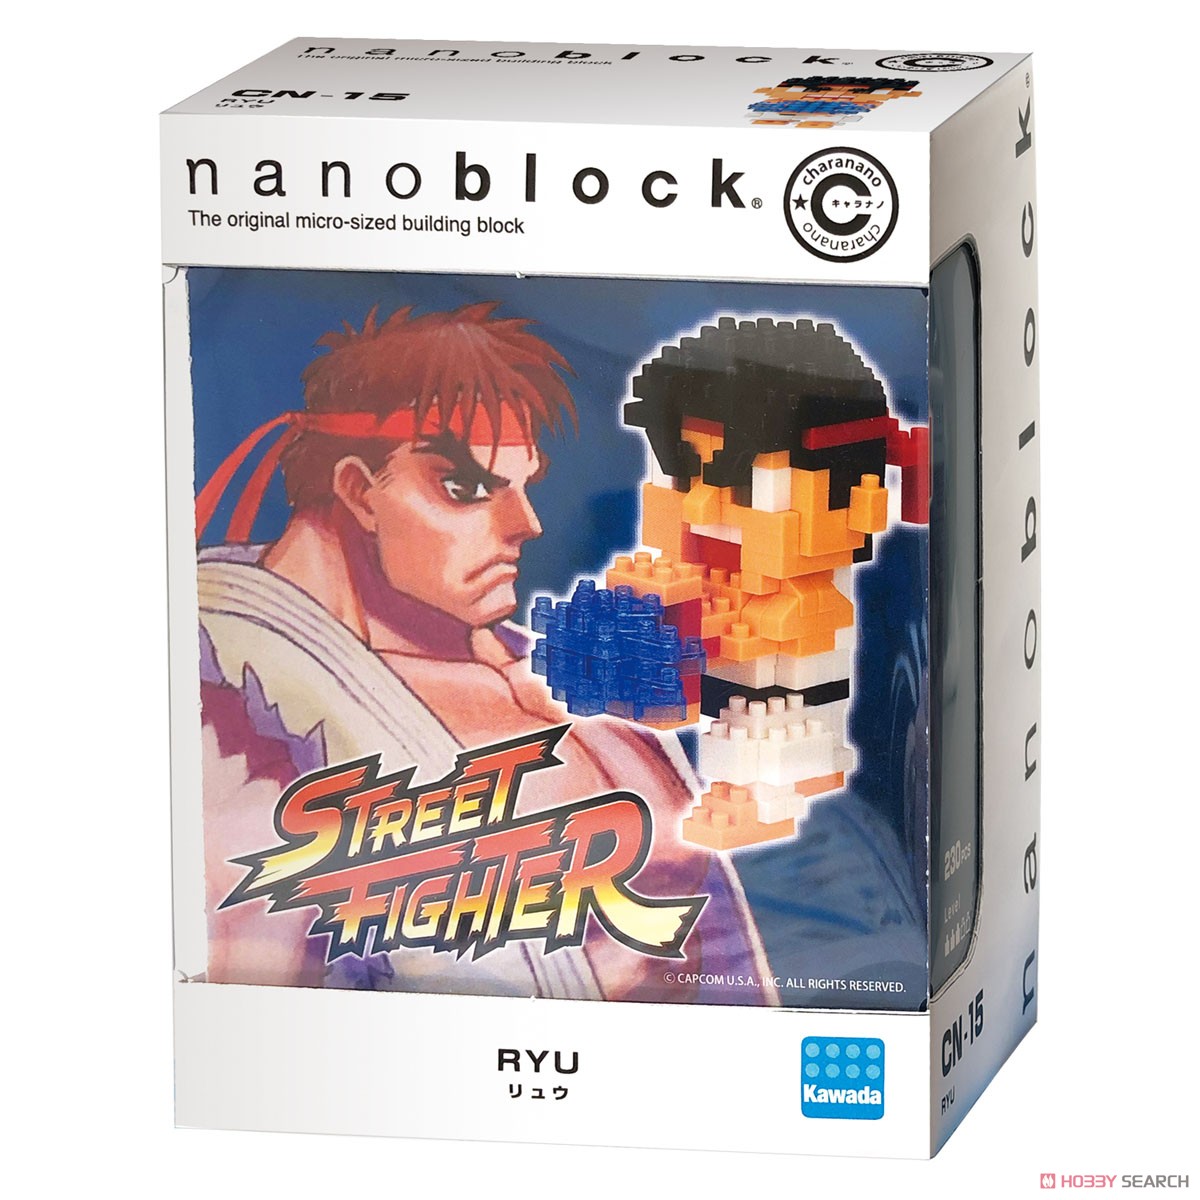 nanoblock Charanano Ryu (Block Toy) Package1